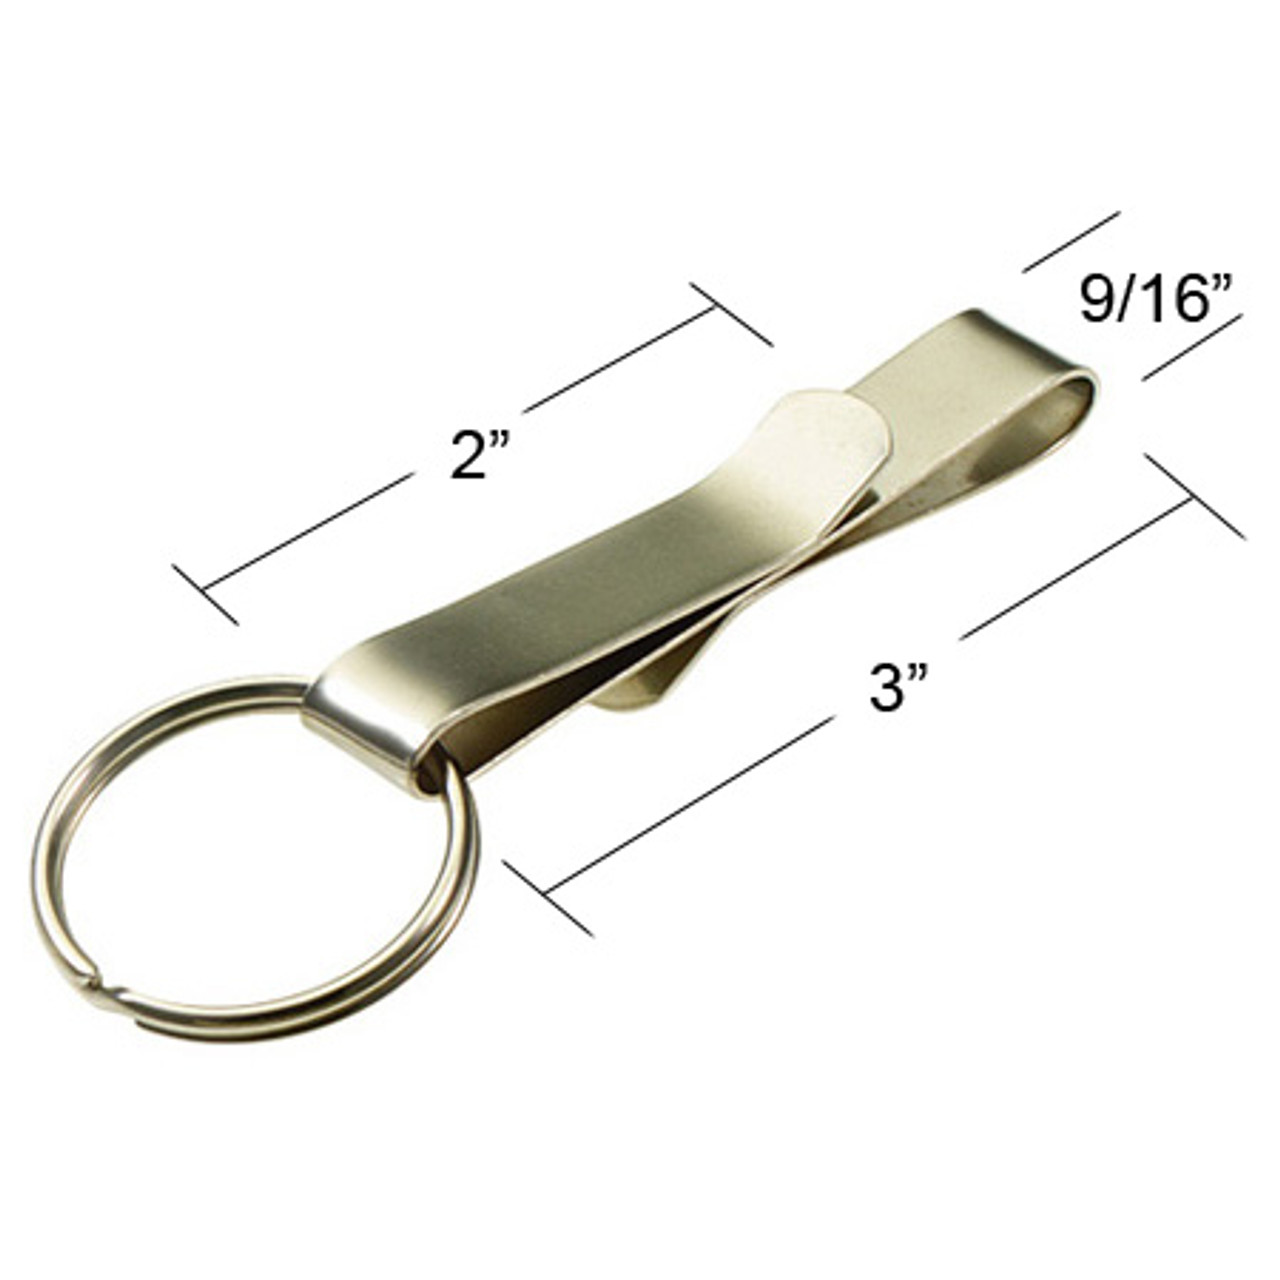 Shop for and Buy Slip On Belt Key Holder S-Hook at